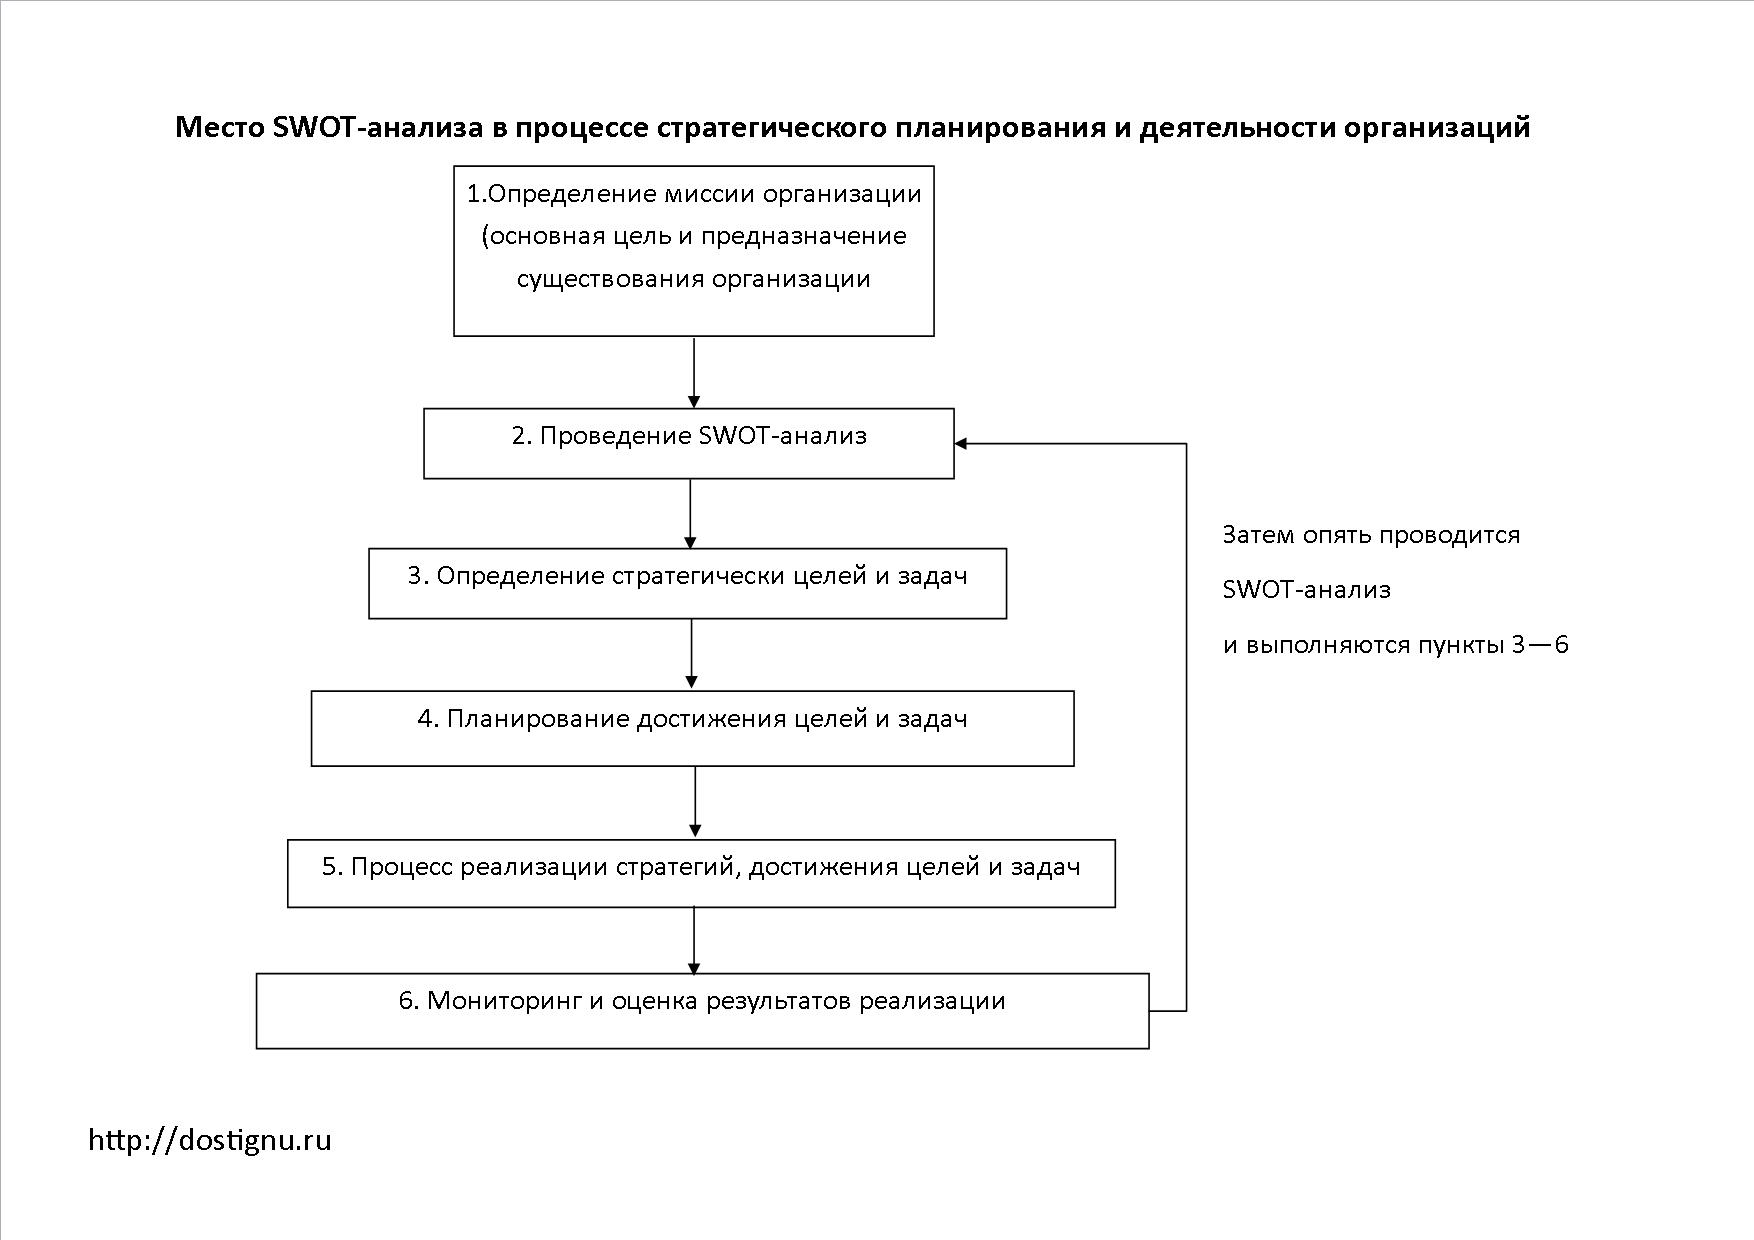 Общие сведения о SWOT-анализе, как о методе системного анализа.